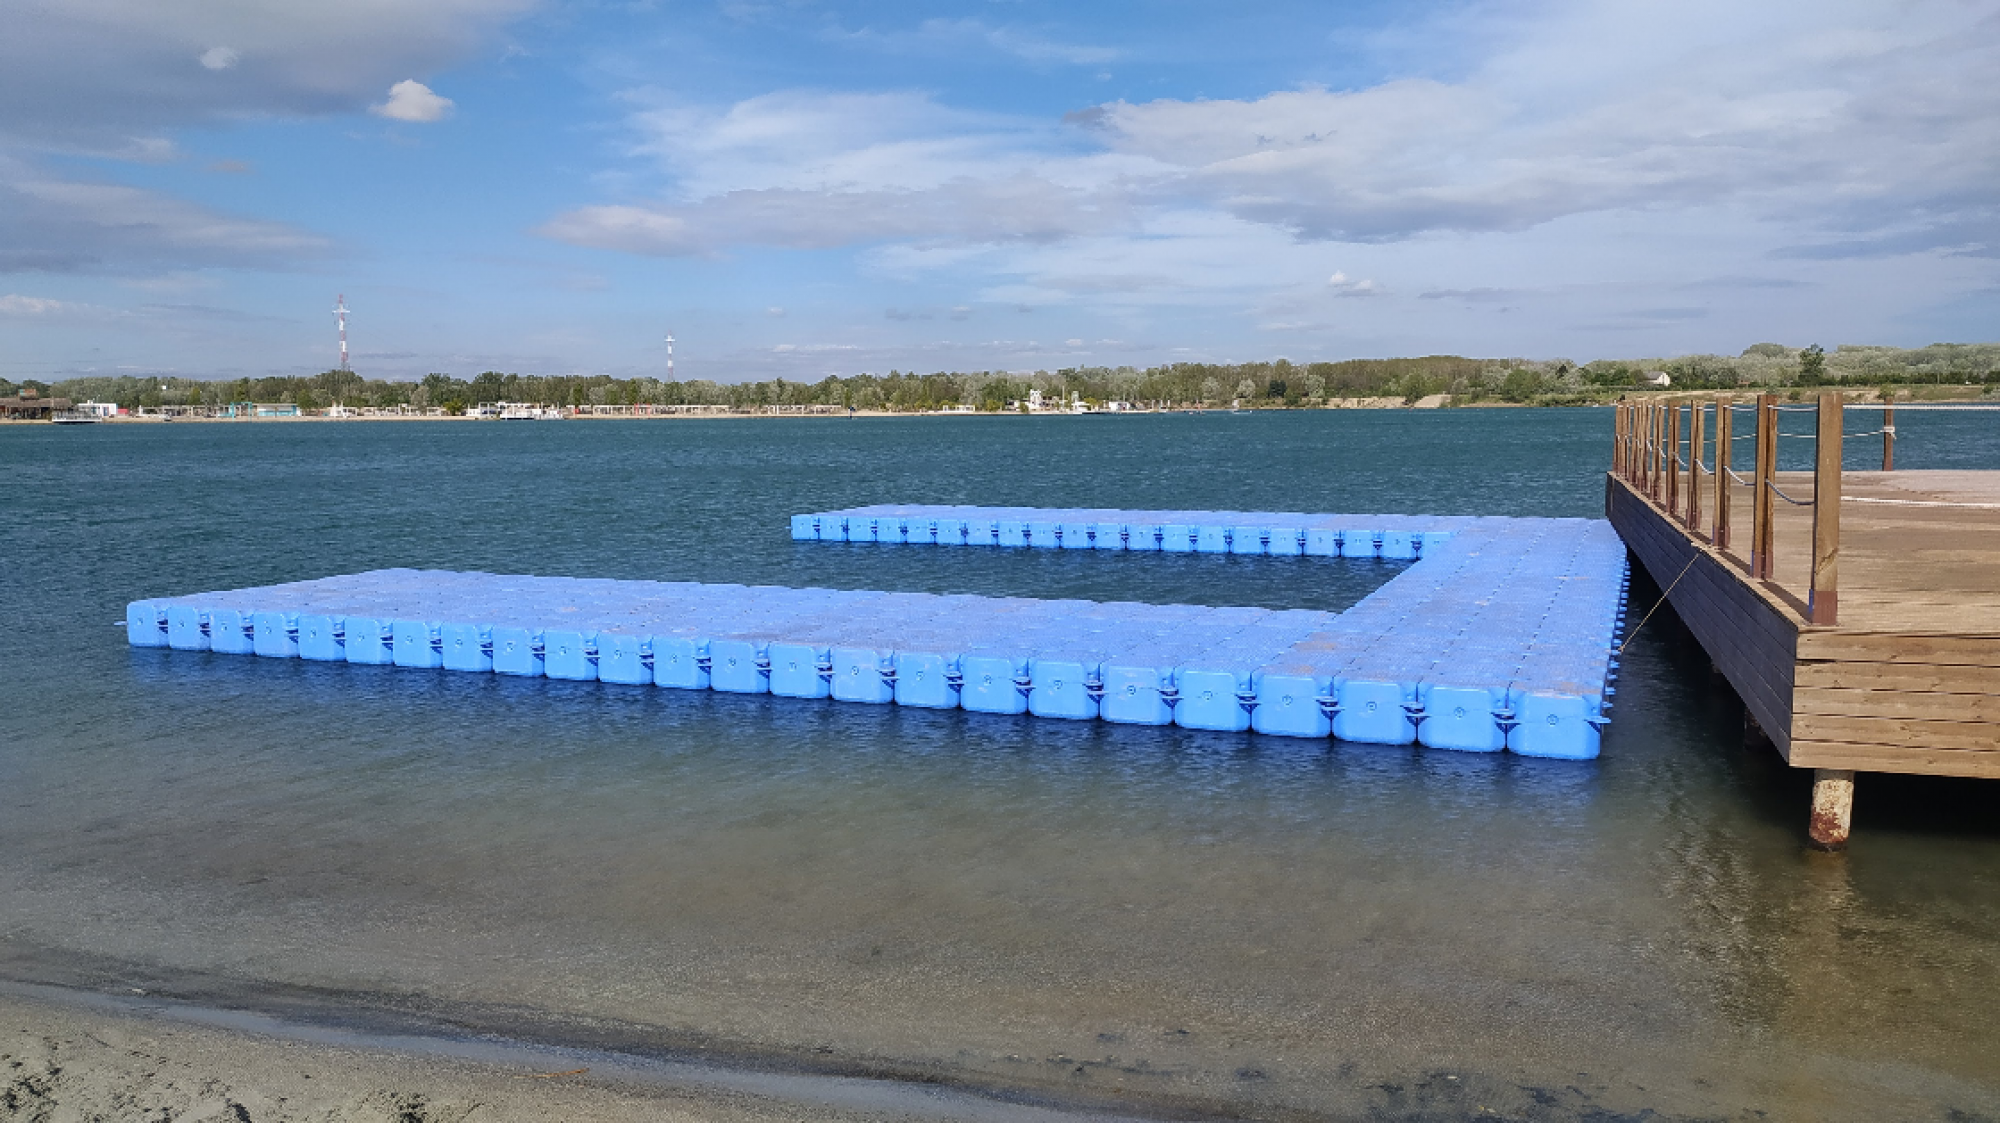 Úszó Európa Bajnokság Lupa-tó - 2021